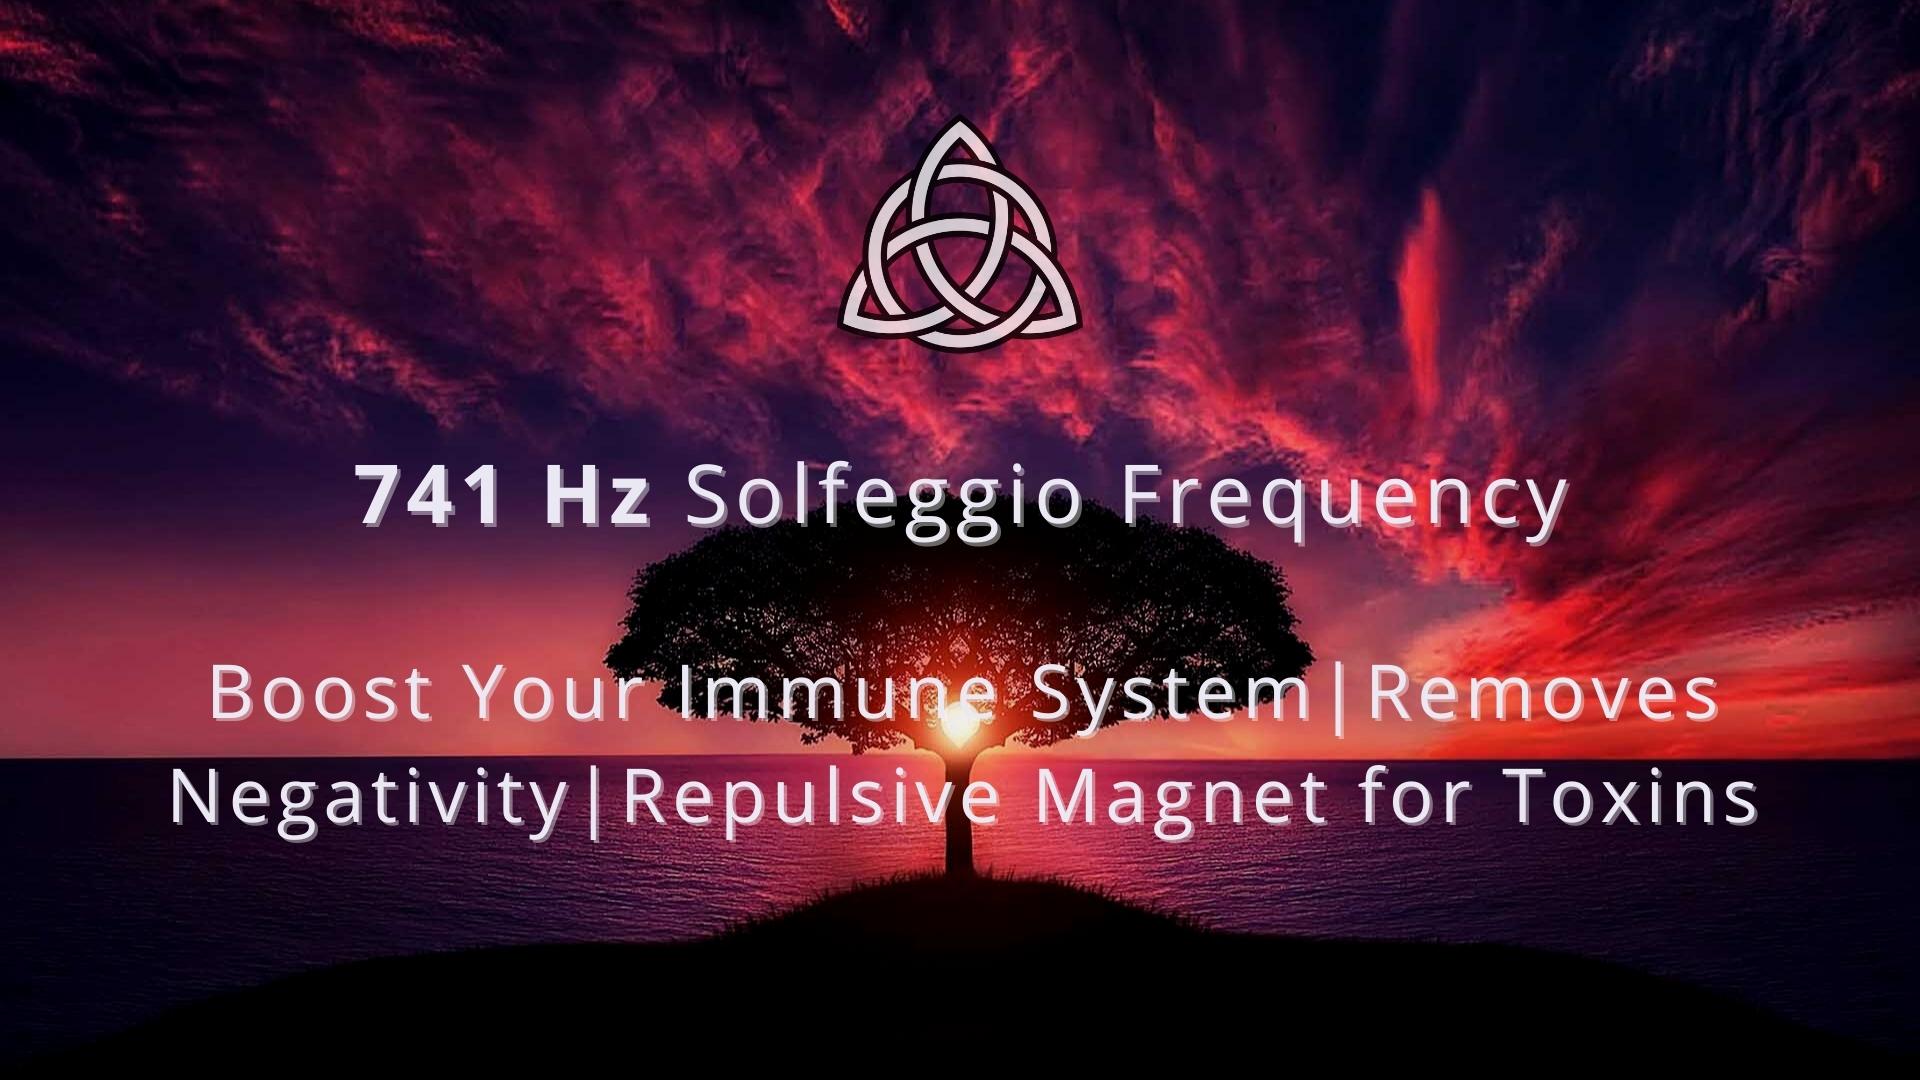 The Amazing Benefits of  741 Hz Solfeggio Frequency